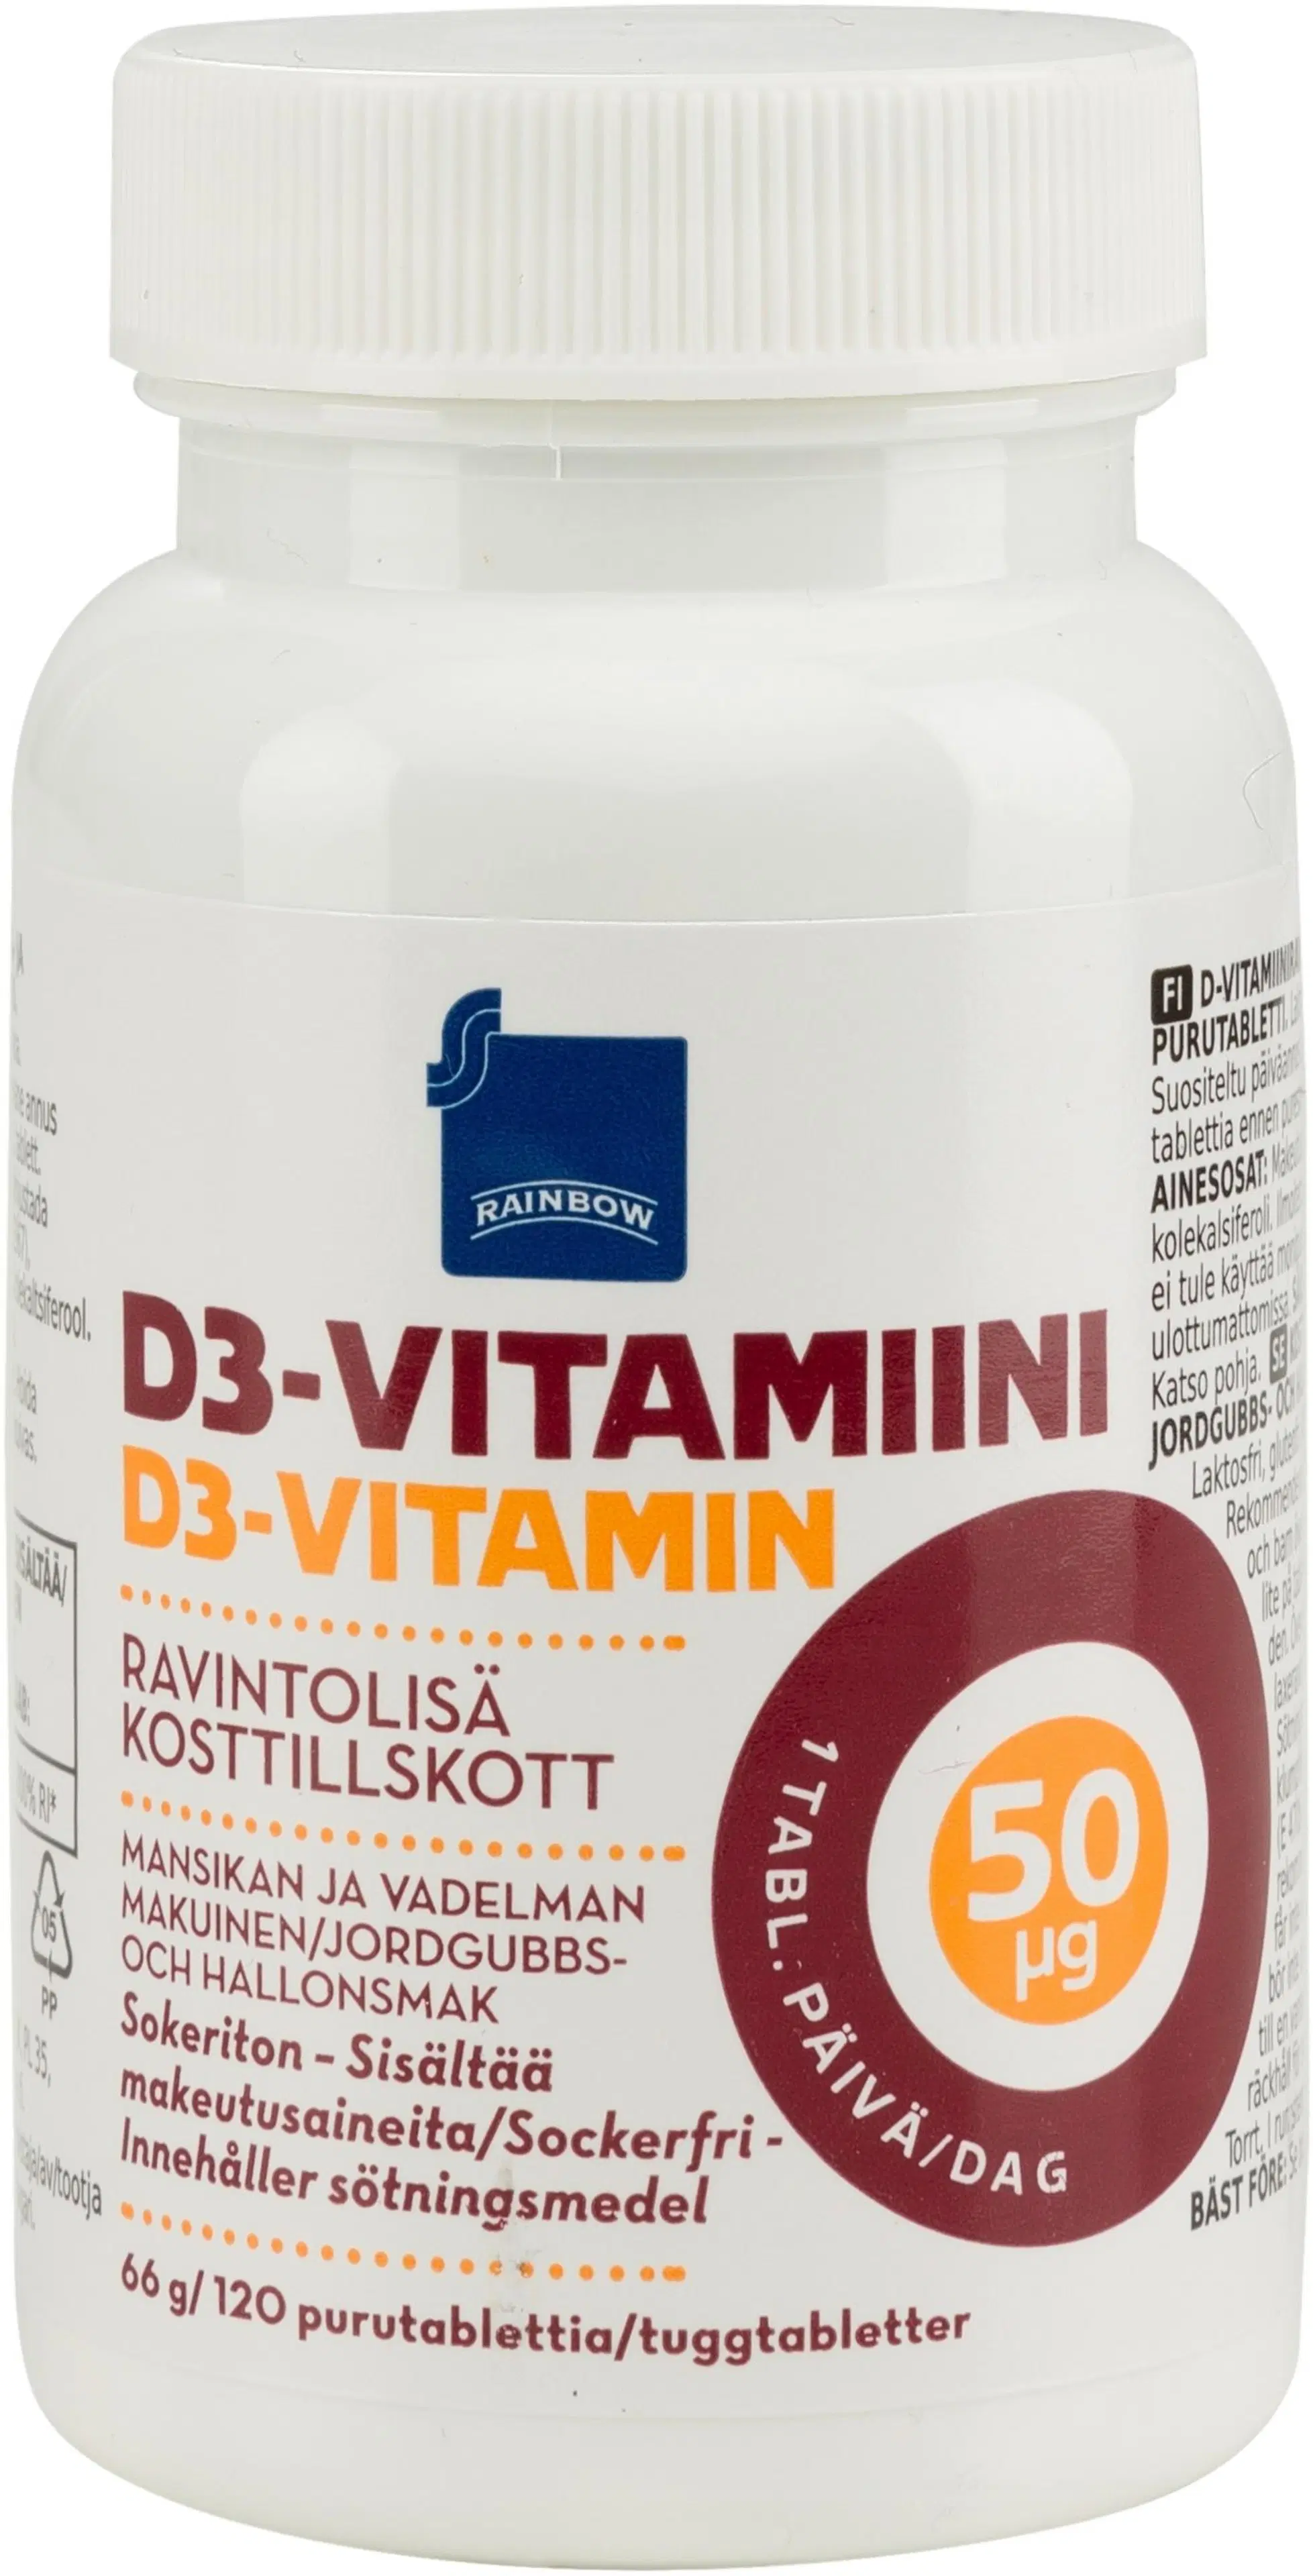 Rainbow D3-vitamiini 50μg ravintolisä 66g/120 purutablettia mansikan- ja vadelmanmakuinen